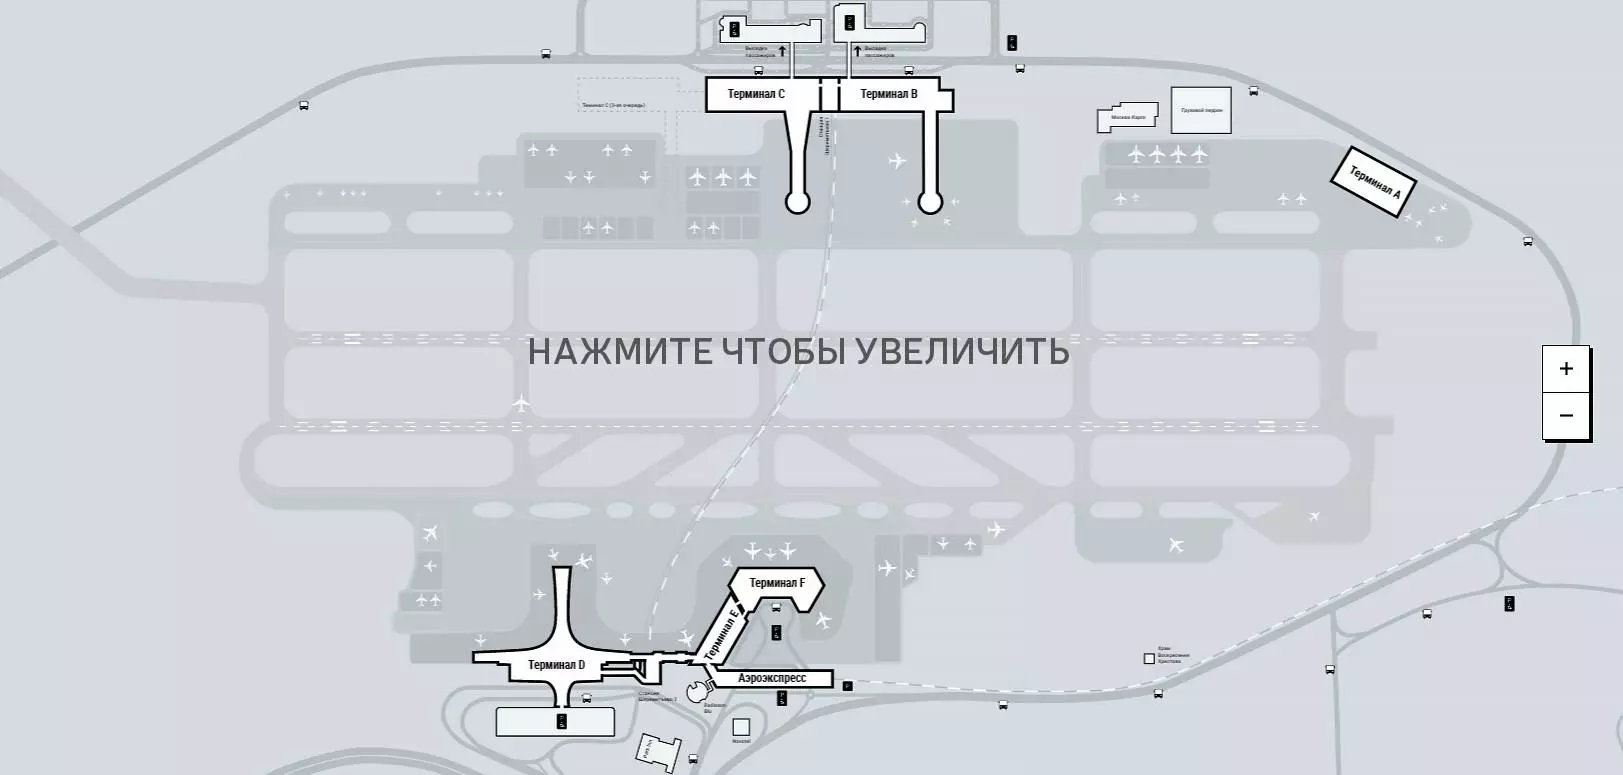 Схемы расположения терминалов f, d, e, c аэропорта шереметьево. схема аэропорта шереметьево: все терминалы на карте где терминал f в шереметьево